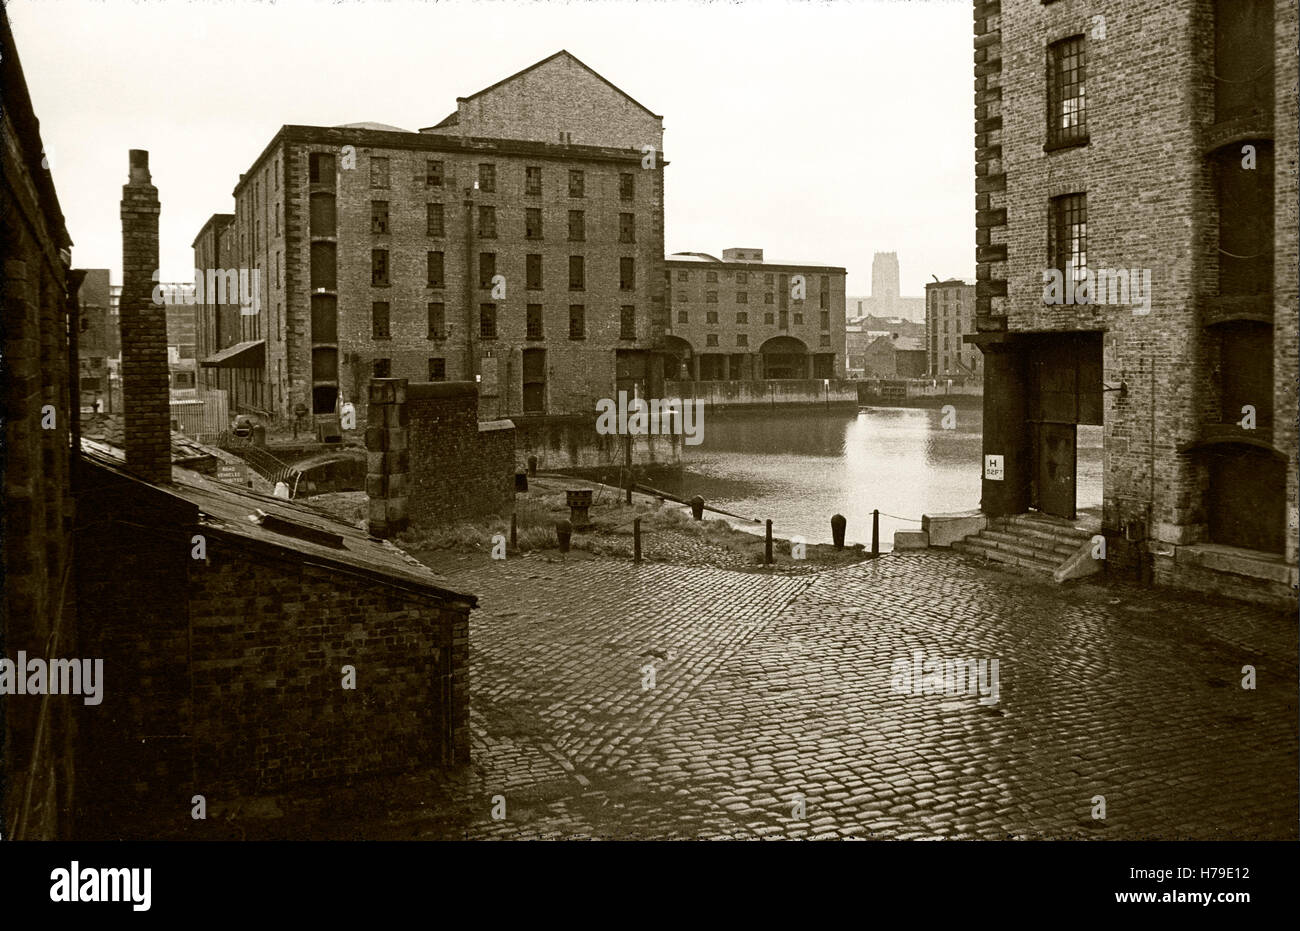 Das Albert Dock, entworfen von Jesse Hartley, wurde 1846 eröffnet, war das erste Bauwerk in Großbritannien aus Gusseisen, Ziegel und Stein gebaut und war das erste nicht-brennbaren Lagersystem in der Welt. Fotografiert um 1976, bevor es renoviert wurde, nach der Toxteth Aufstände von 1981, Stadt Liverpool, Merseyside, Lancashire, England Stockfoto